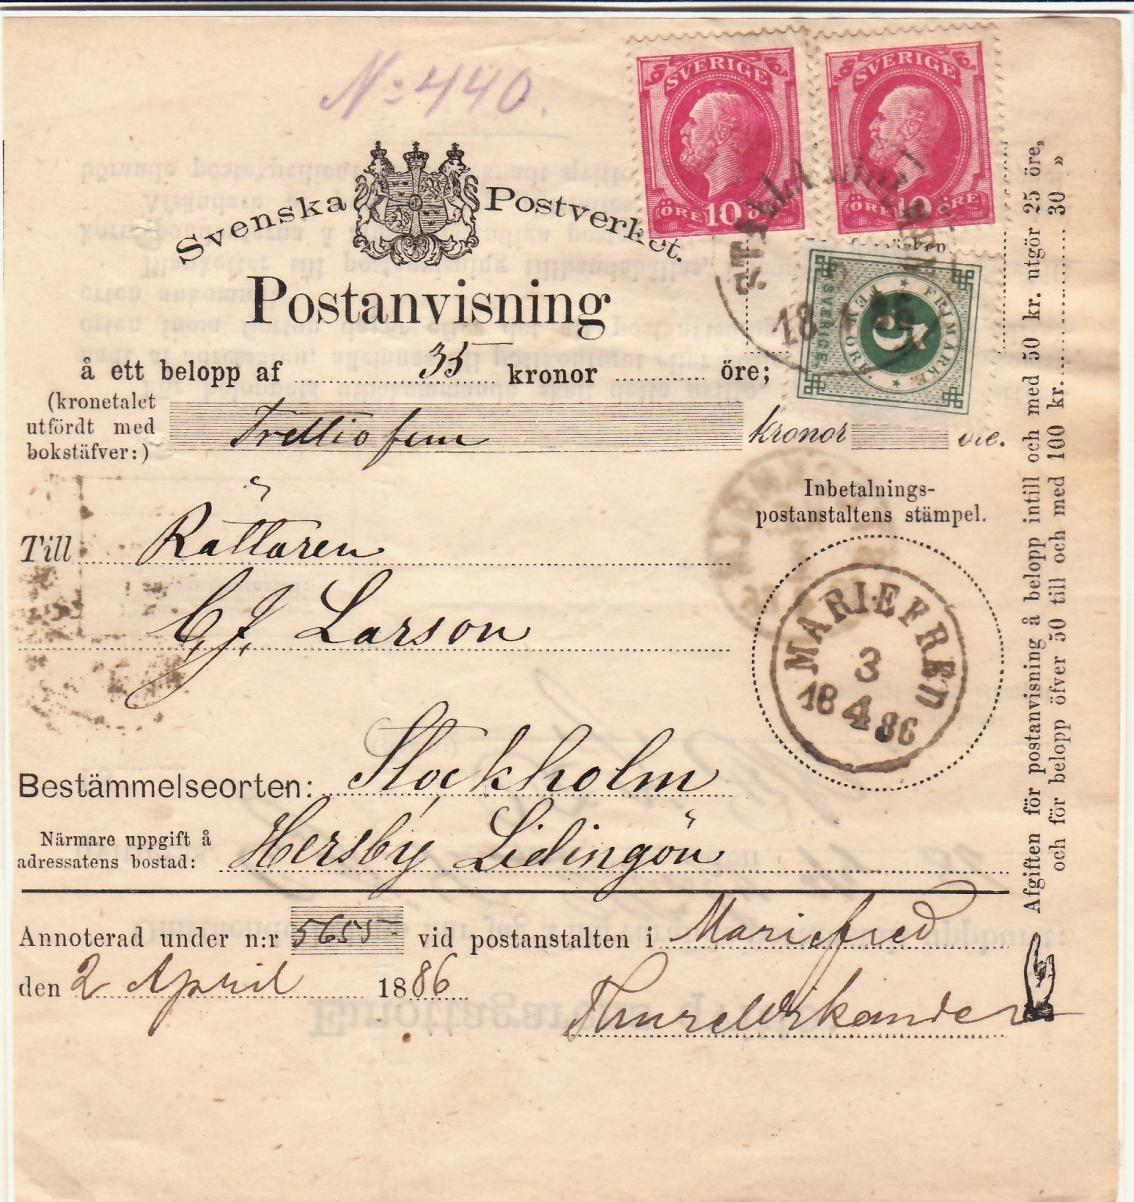 Postanvisning till Hersby Lidingö 2/4 1886 från Stallarholmen.